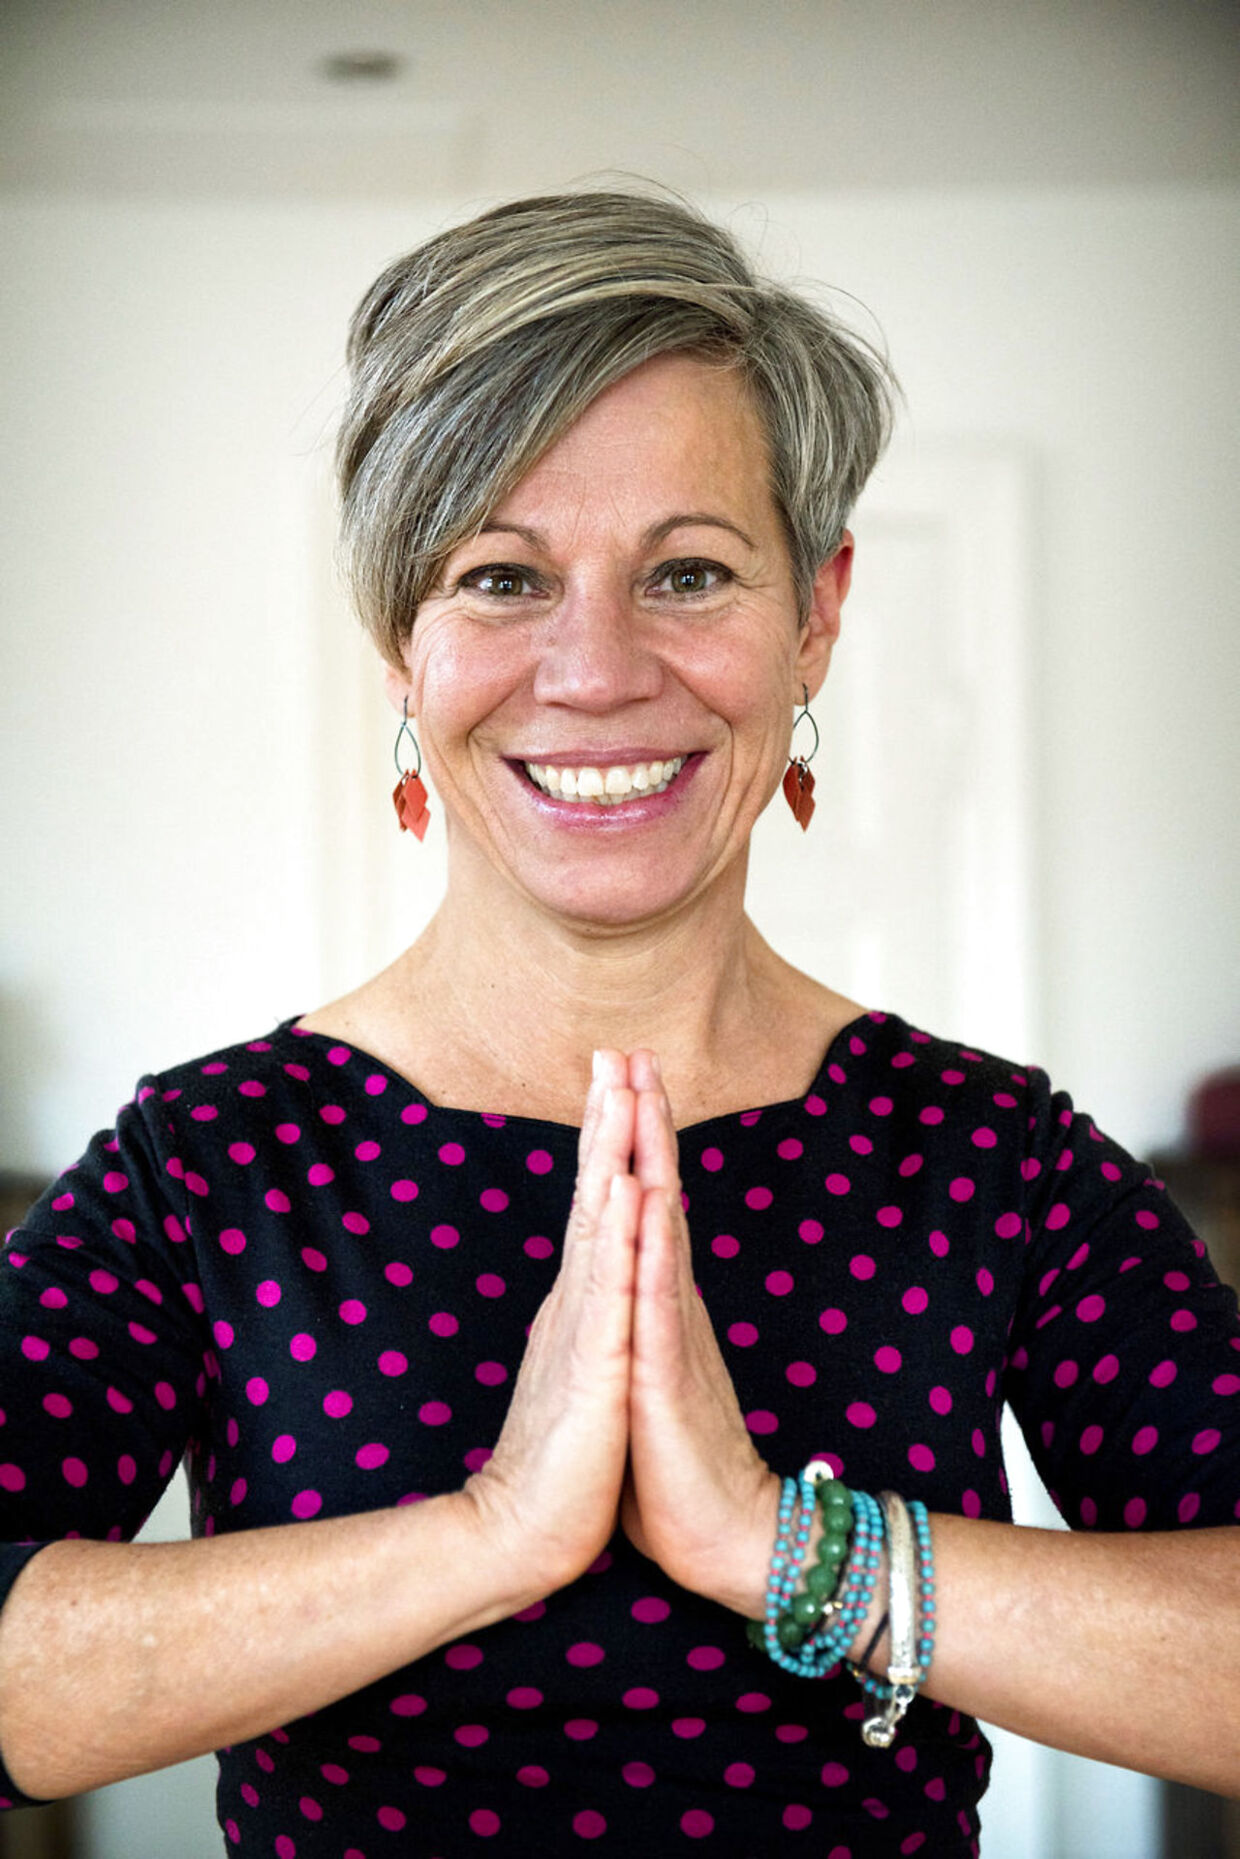 Trine Rønnov er uddannet læge og havde fuld gang karrieren som praktiserende læge, da hun gik ned med stress og måtte sygemeldes i fire måneder. I den proces, der fulgte endte hun med at gå en anden vej arbejdsmæssigt og sælge sin praksis. Hun arbejder i dag med kursister ifht meditation og mindfulness og vejen til en stress fri tilværelse